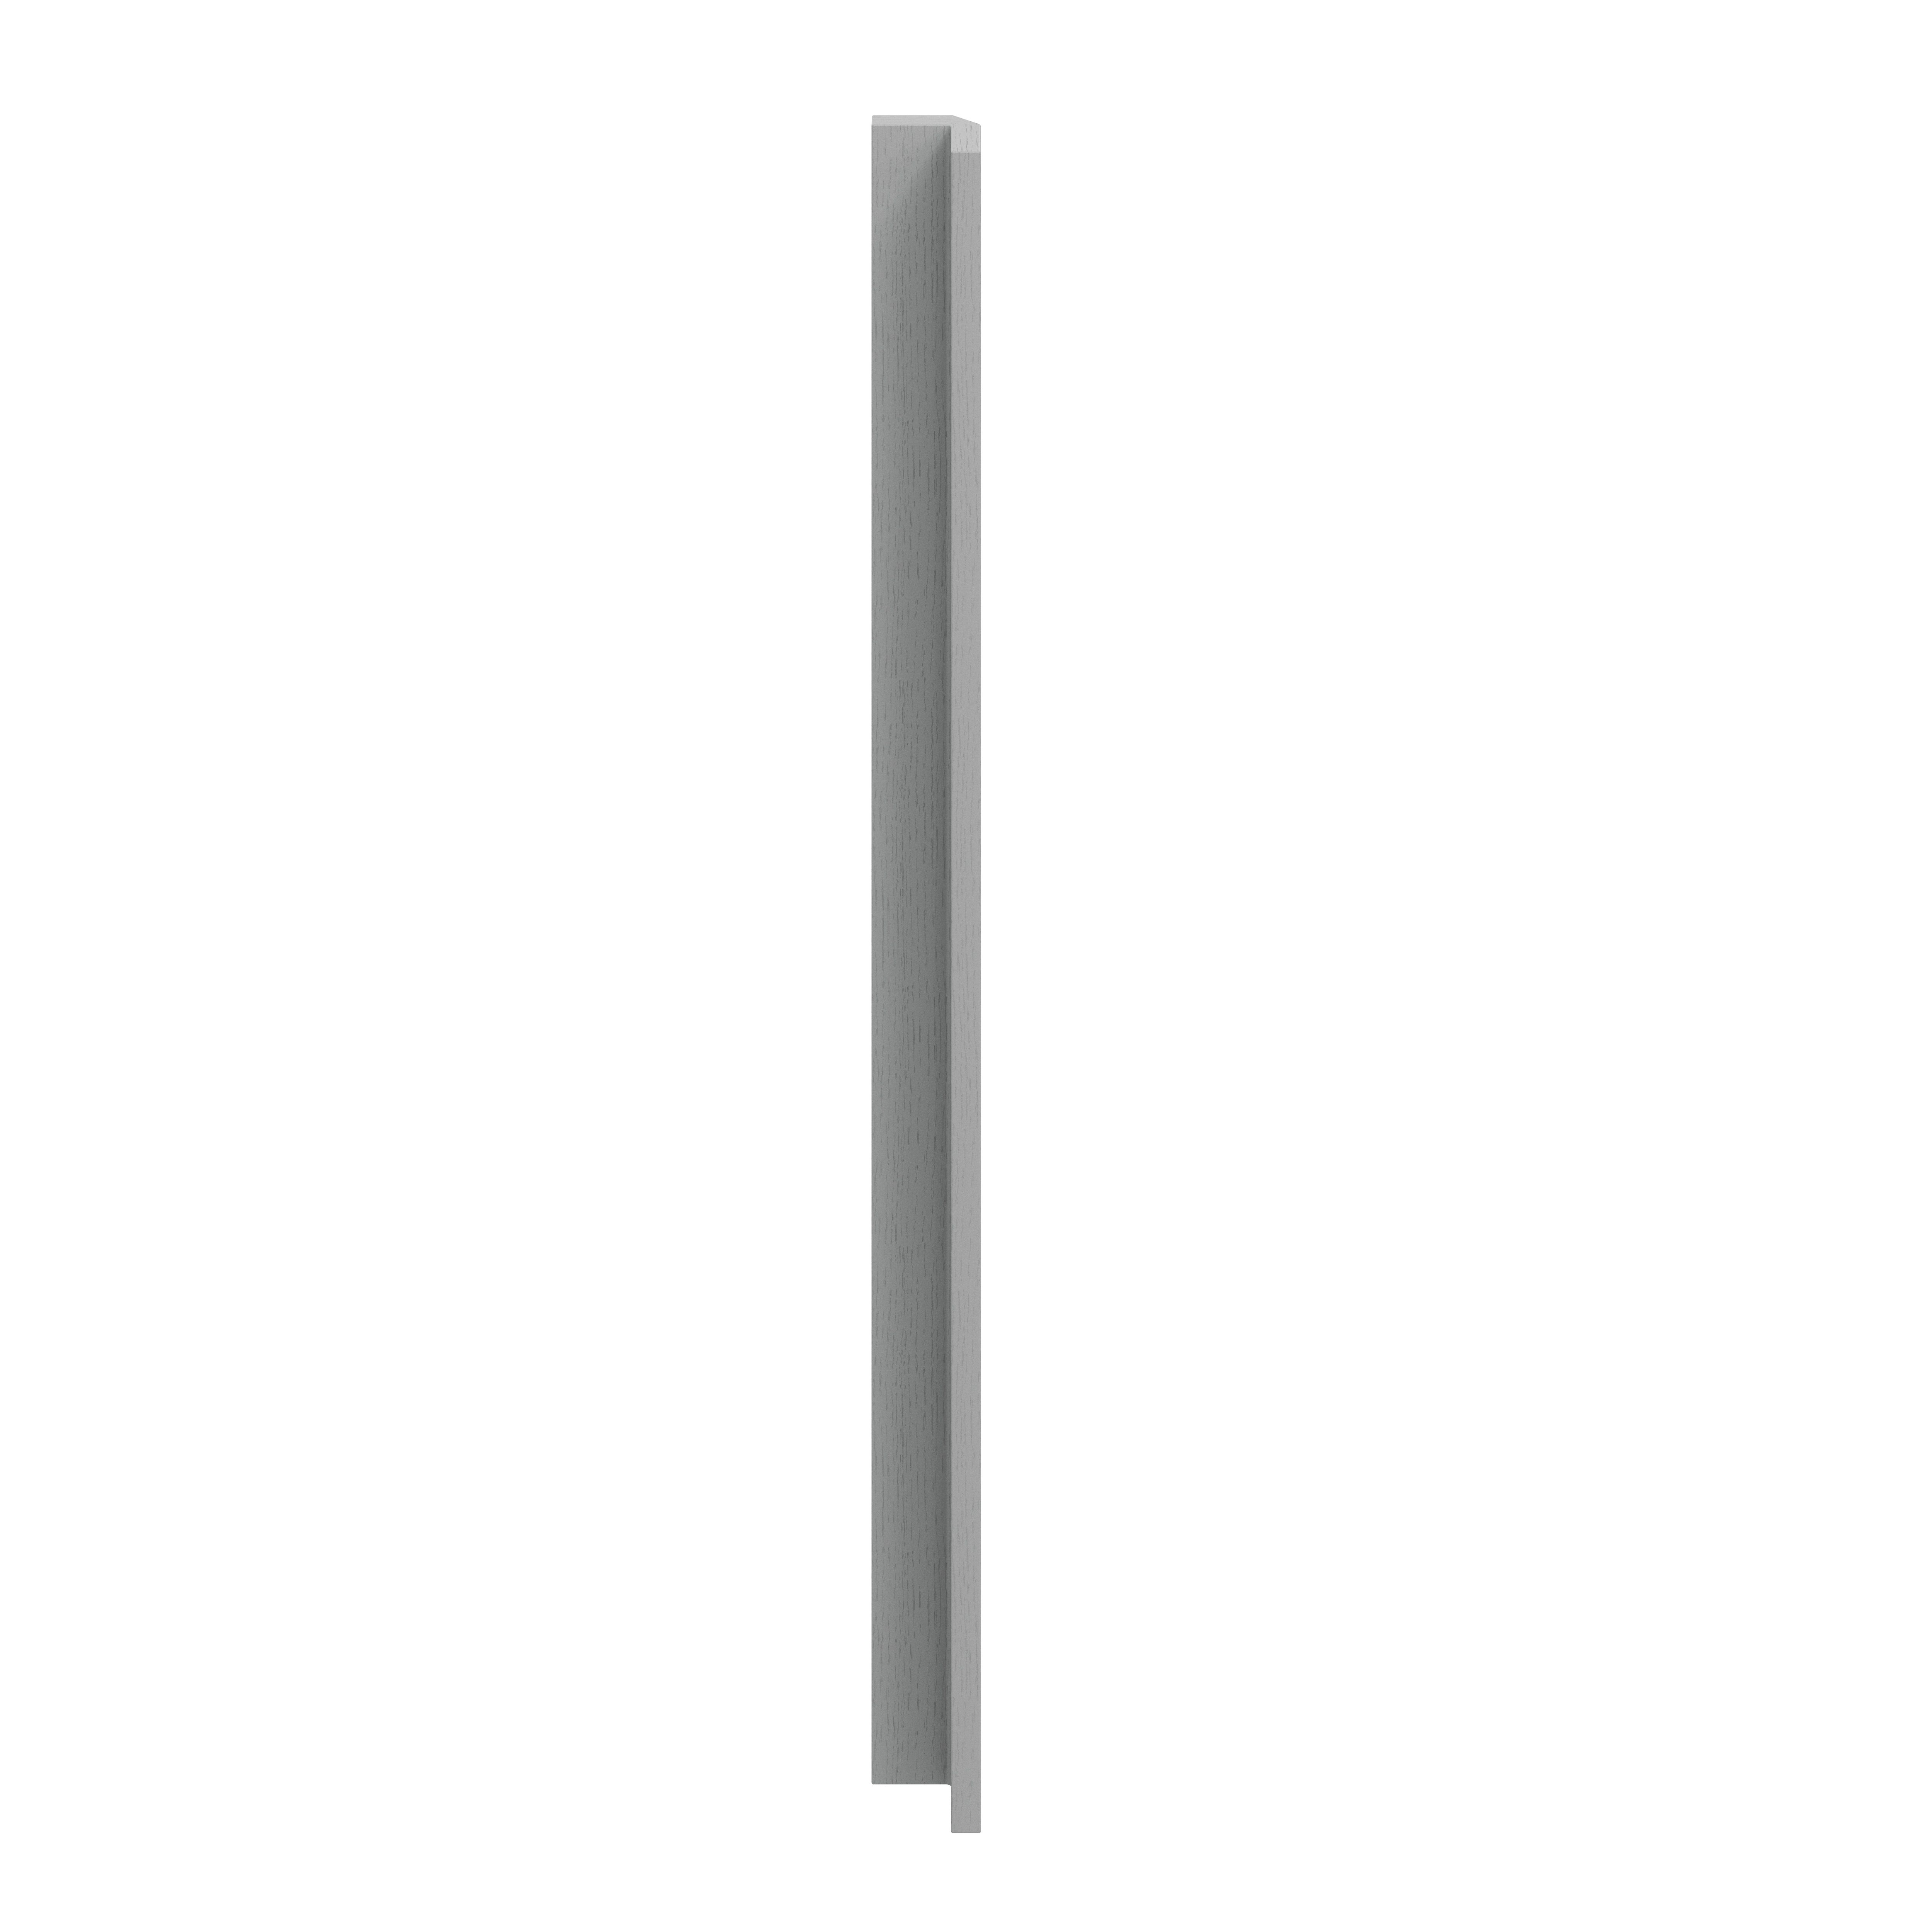 GoodHome Alpinia Matt Slate Grey Painted Wood Effect Shaker Tall Wall corner post, (W)59mm (H)895mm